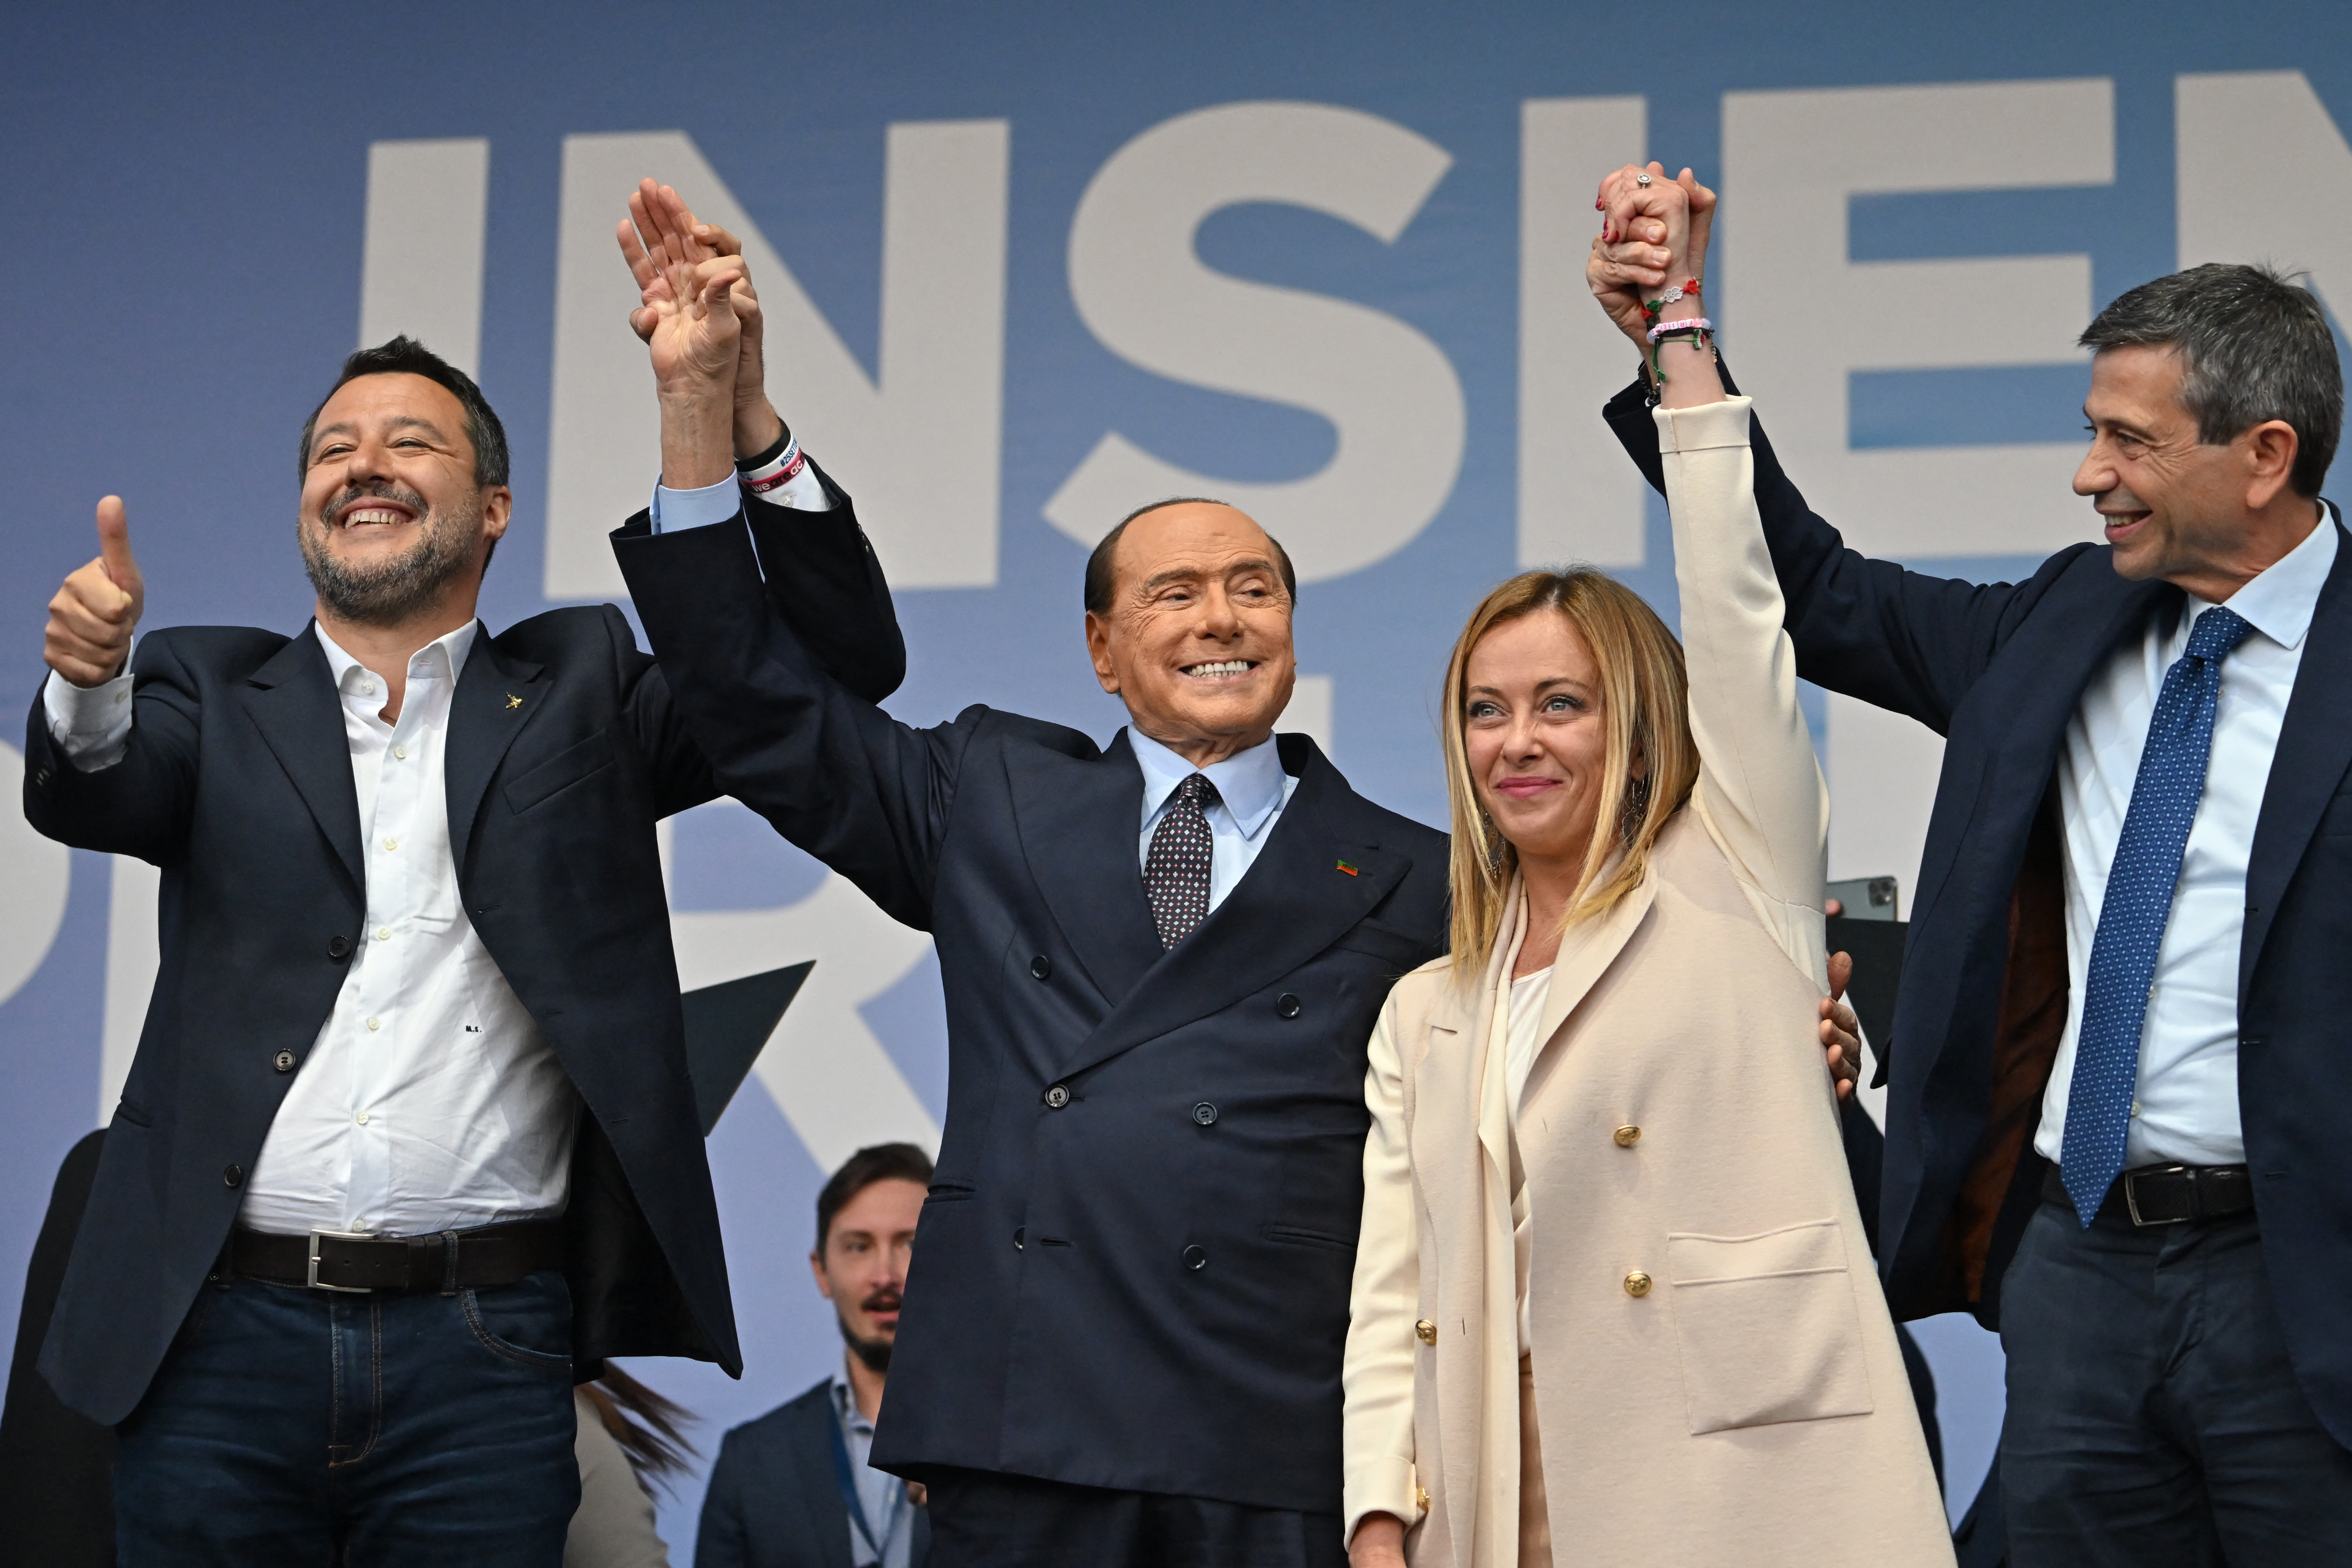 Lega leader Matteo Salvini, Forza Italia leader Silvio Berlusconi, Giorgia Meloni, and Italian centre-right lawmaker Maurizio Lupi at a rally. Alberto Pizzoli / AFP